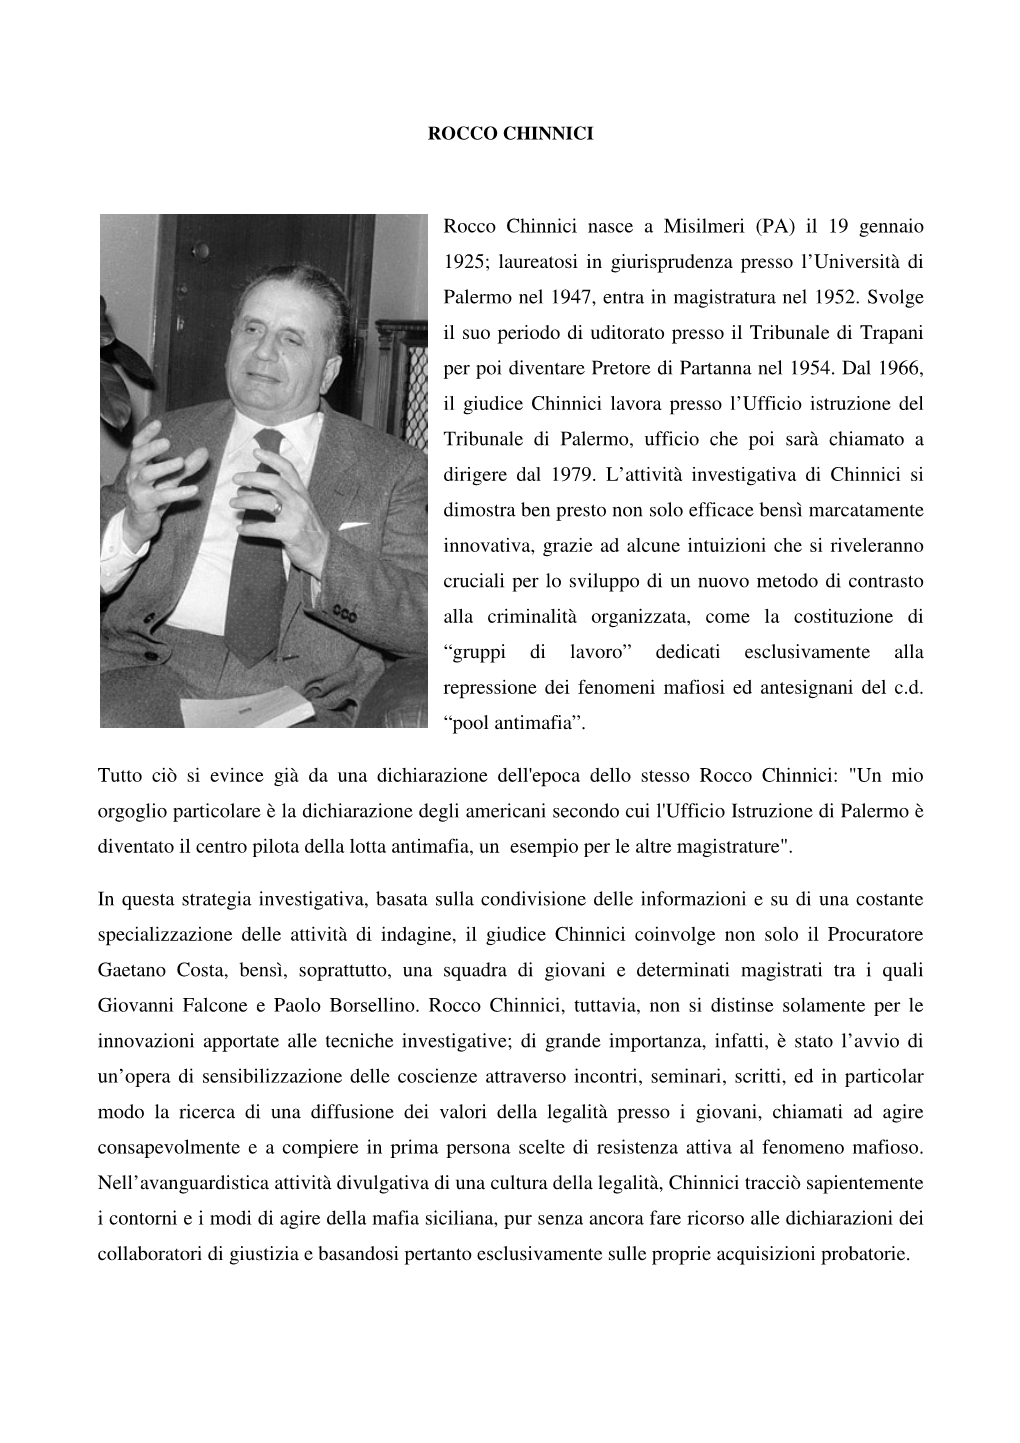 Rocco Chinnici Nasce a Misilmeri (PA) Il 19 Gennaio 1925; Laureatosi in Giurisprudenza Presso L’Università Di Palermo Nel 1947, Entra in Magistratura Nel 1952